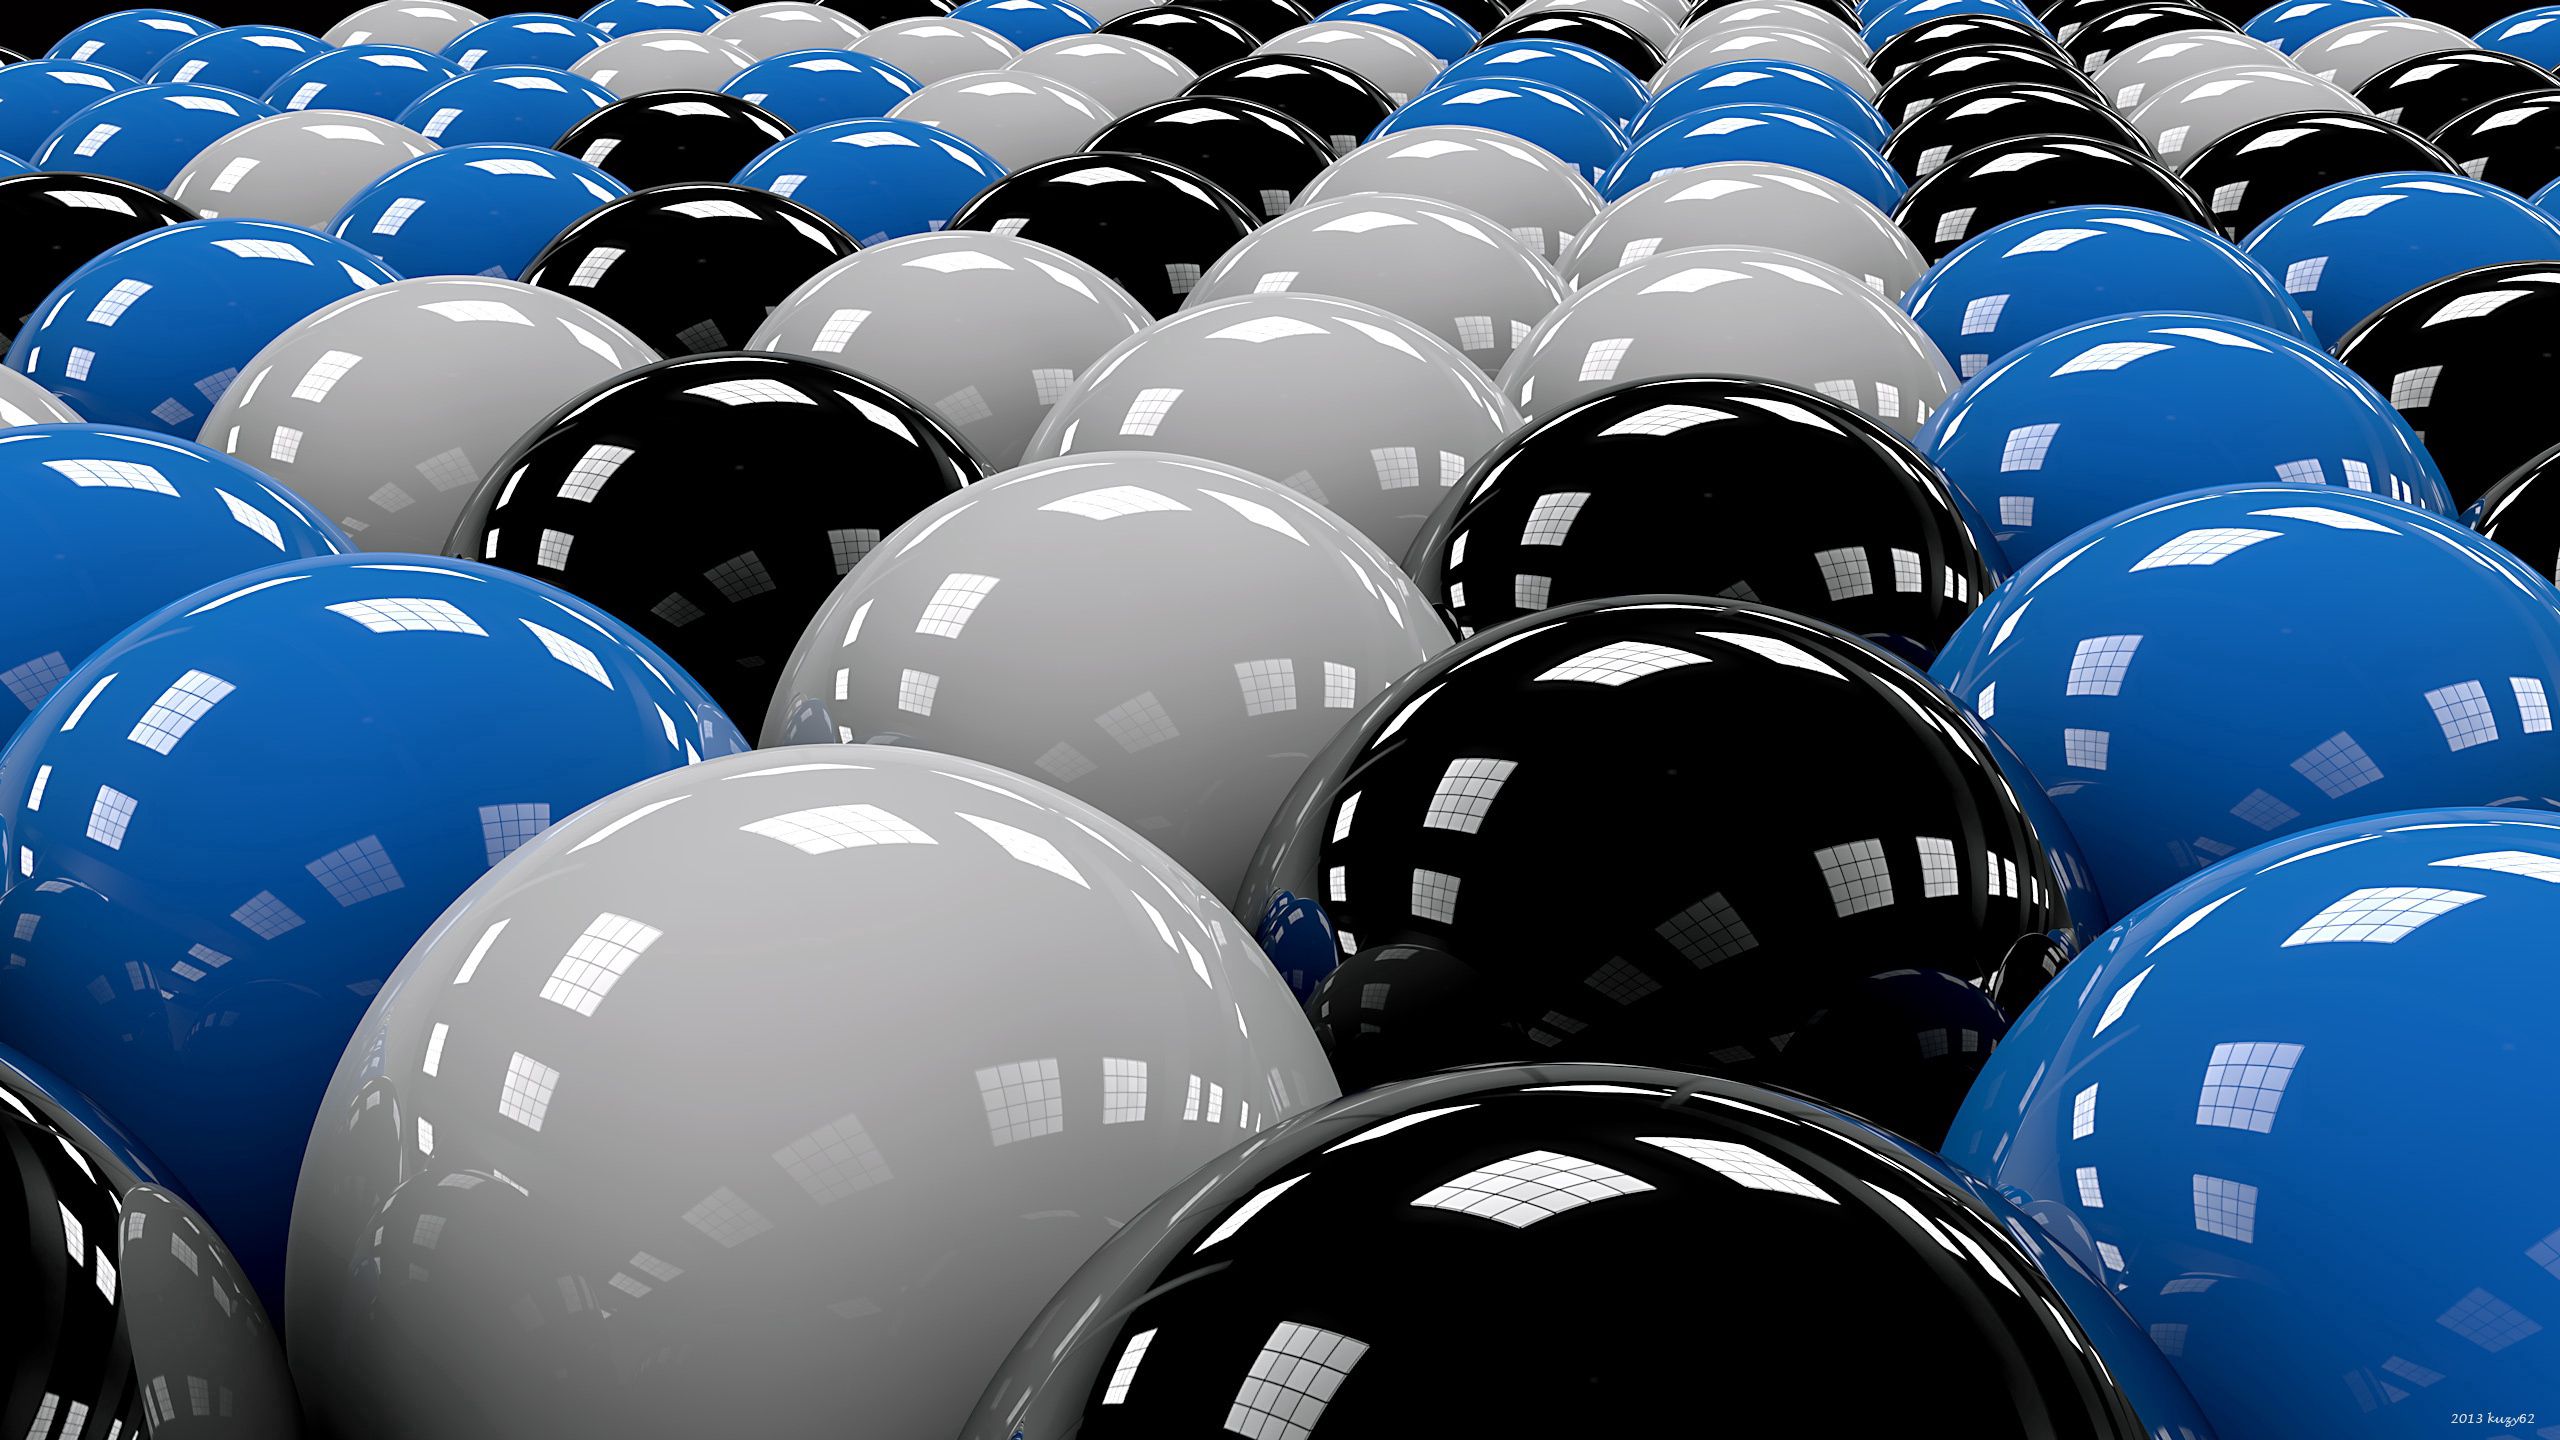 balls, black, 3d, white, blue, rows, ranks wallpaper for mobile